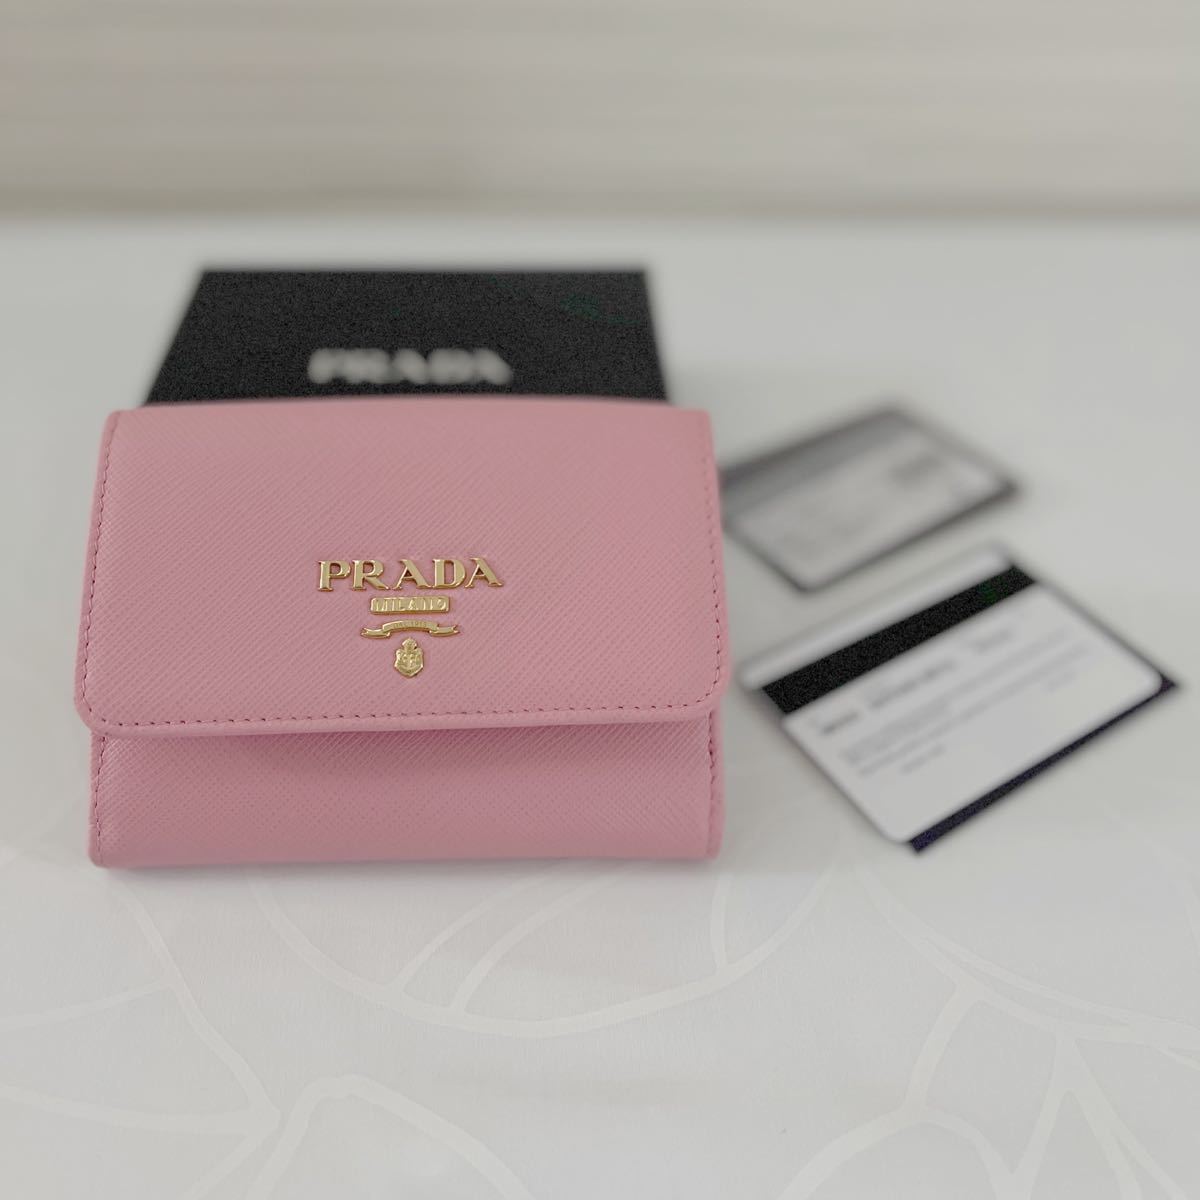 プラダ PRADA 二つ折り財布 ピンク 美品 サフィアーノレザー